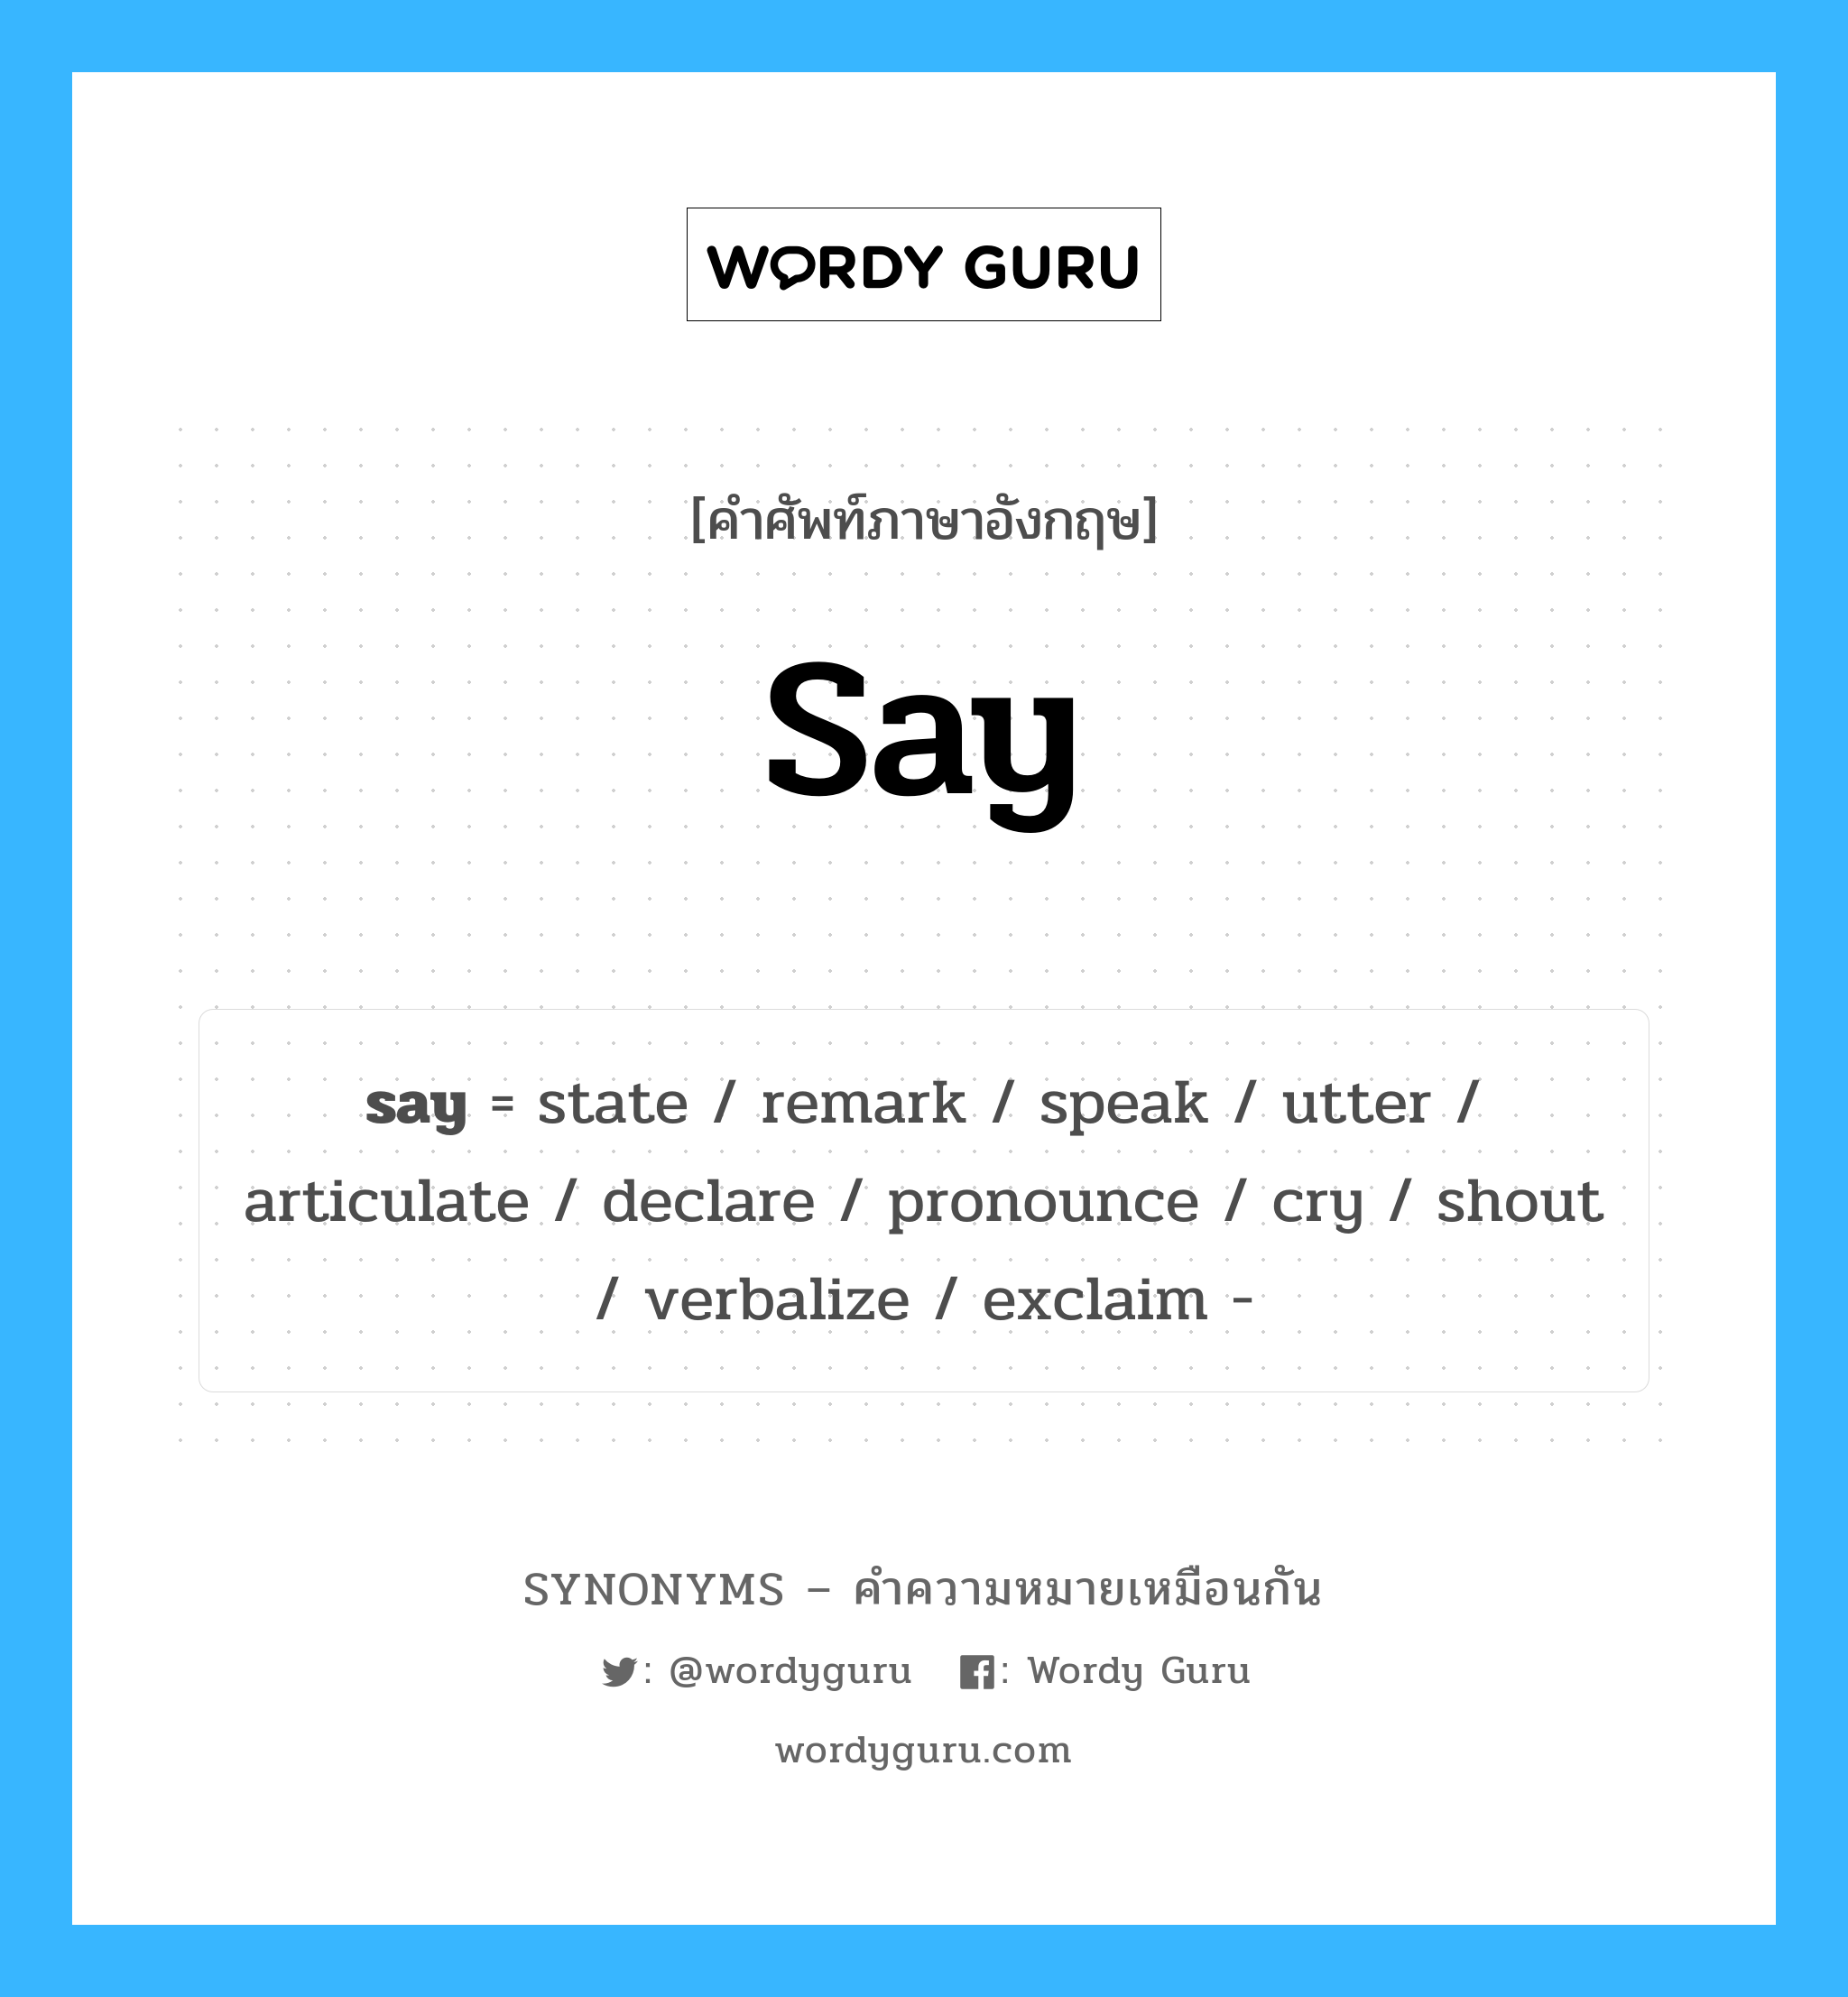 verbalize เป็นหนึ่งใน say และมีคำอื่น ๆ อีกดังนี้, คำศัพท์ภาษาอังกฤษ verbalize ความหมายคล้ายกันกับ say แปลว่า คำพูด หมวด say